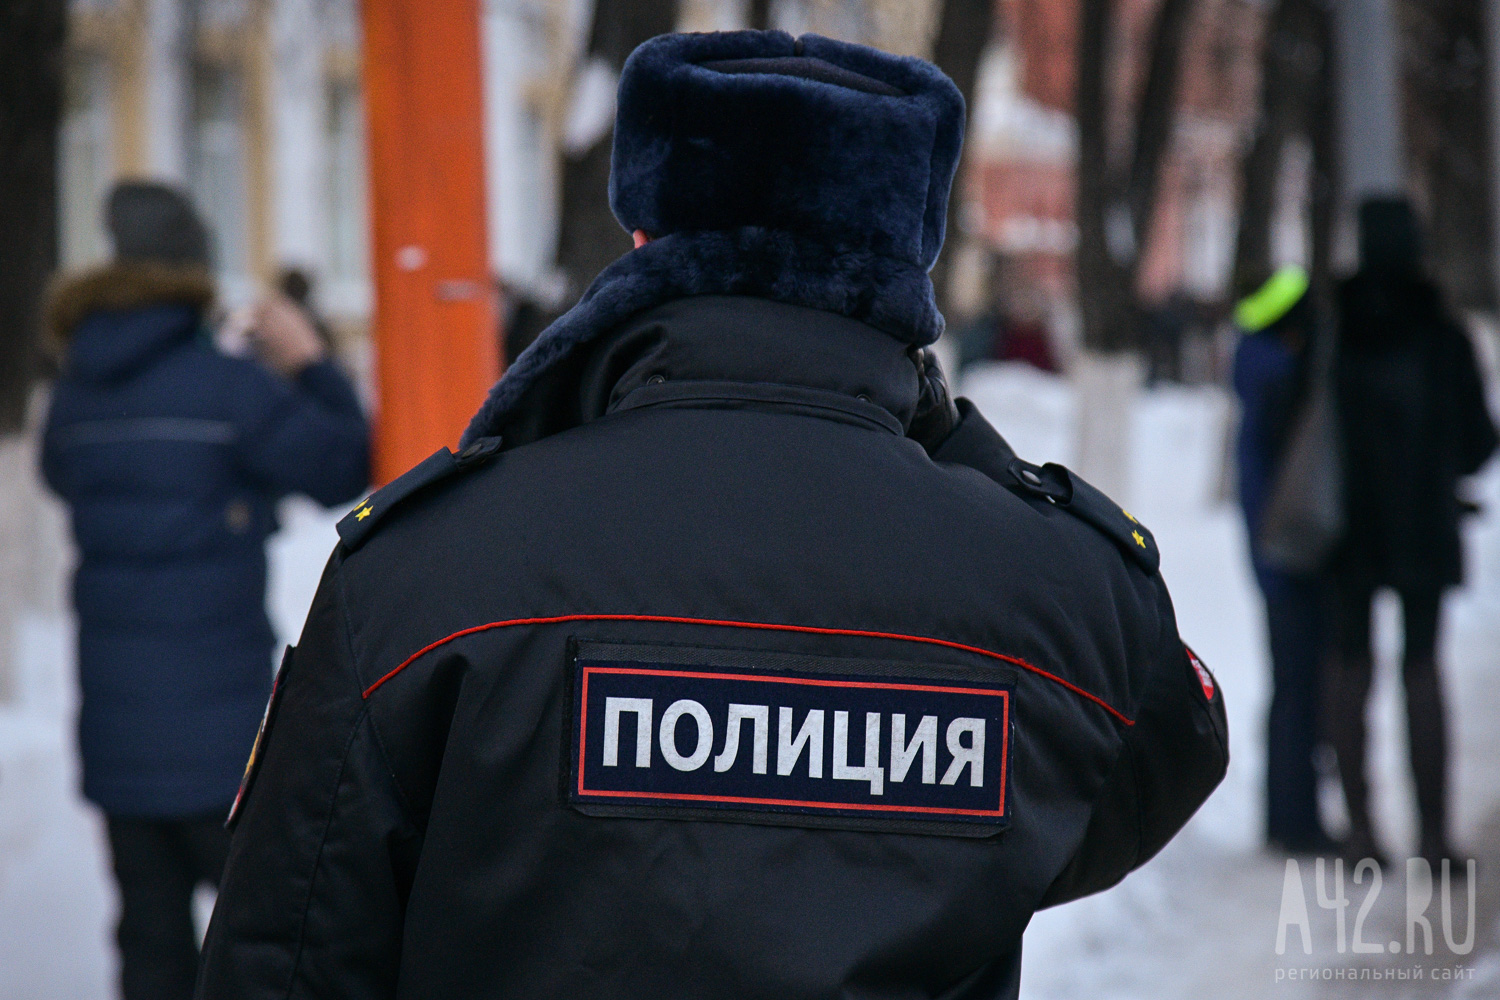 Соцсети: Поджечь военкомат в Кемерове пыталась сотрудница местной строительной компании